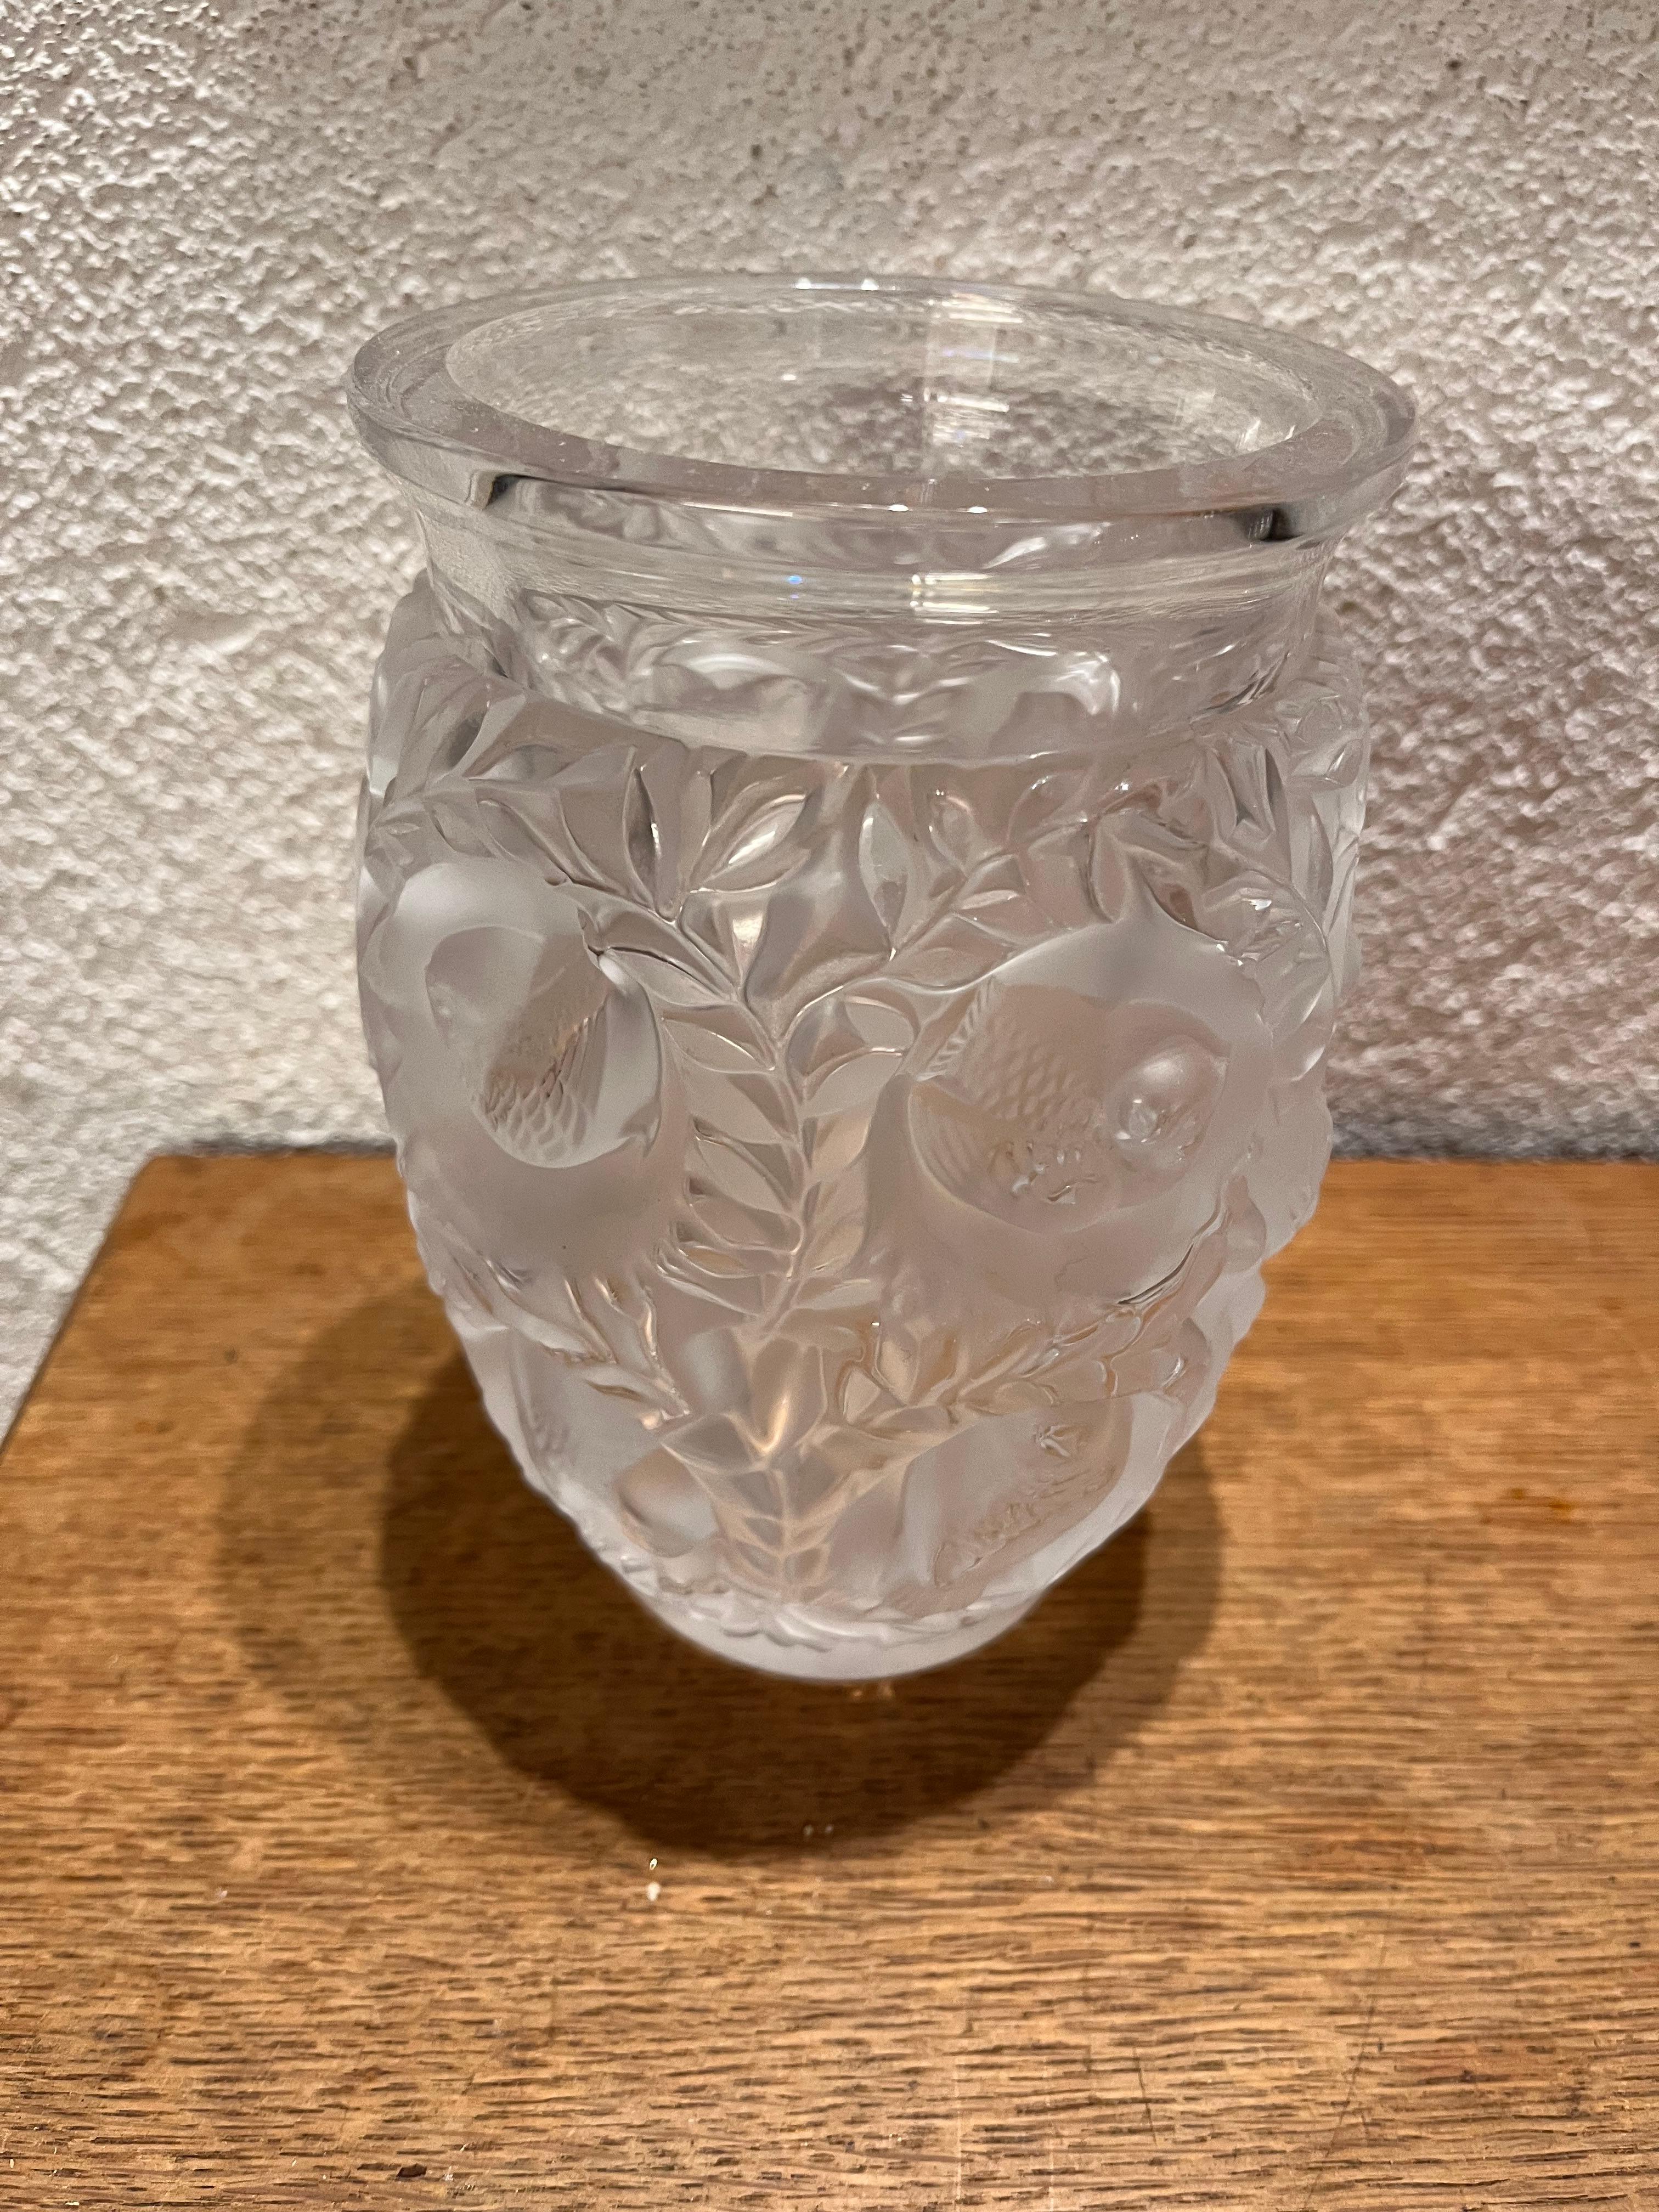 Die Bagatelle-Vase ist ein emblematisches Stück von Lalique und ein Verkaufsschlager. Nach einer naturwissenschaftlichen Inspiration wurde es 1939 zum ersten Mal gezeichnet. Diese Vase wurde zu einem Klassiker der Kollektion, der die Themen Fauna